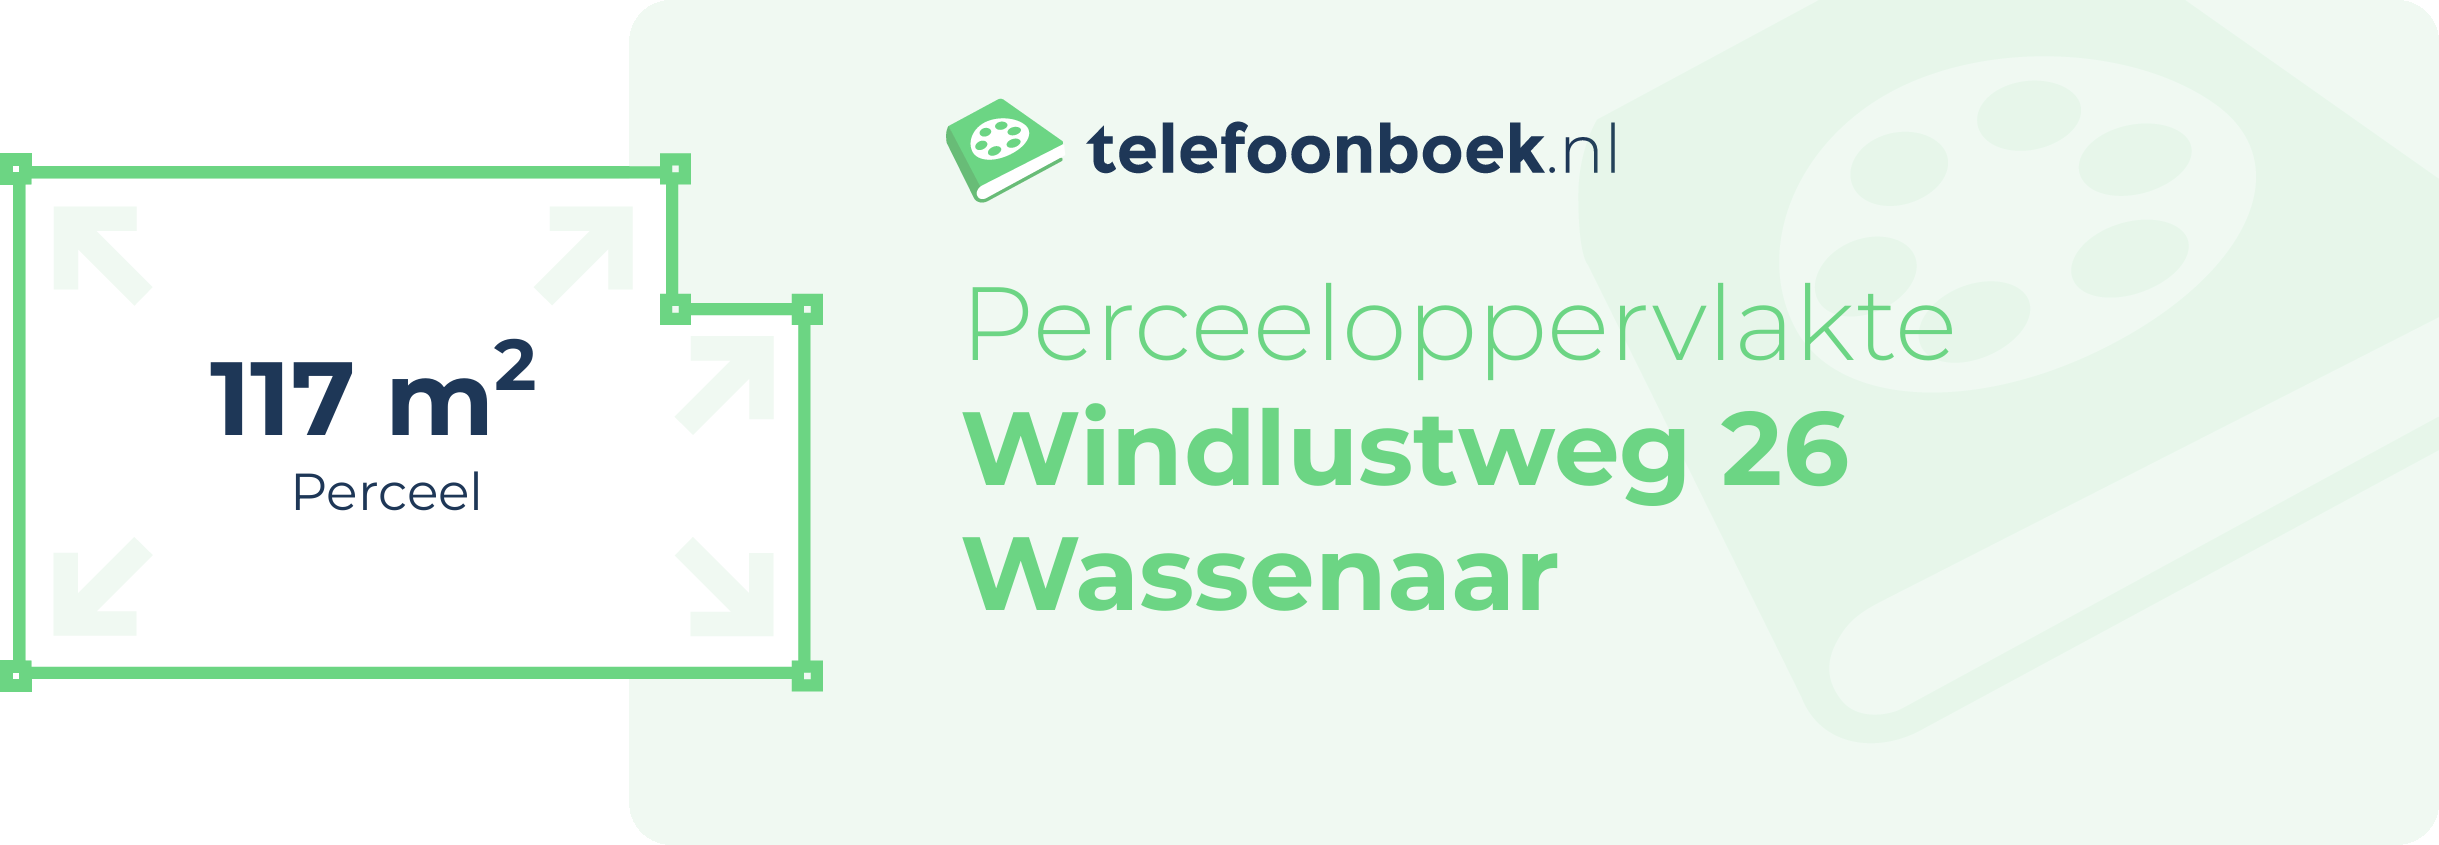 Perceeloppervlakte Windlustweg 26 Wassenaar